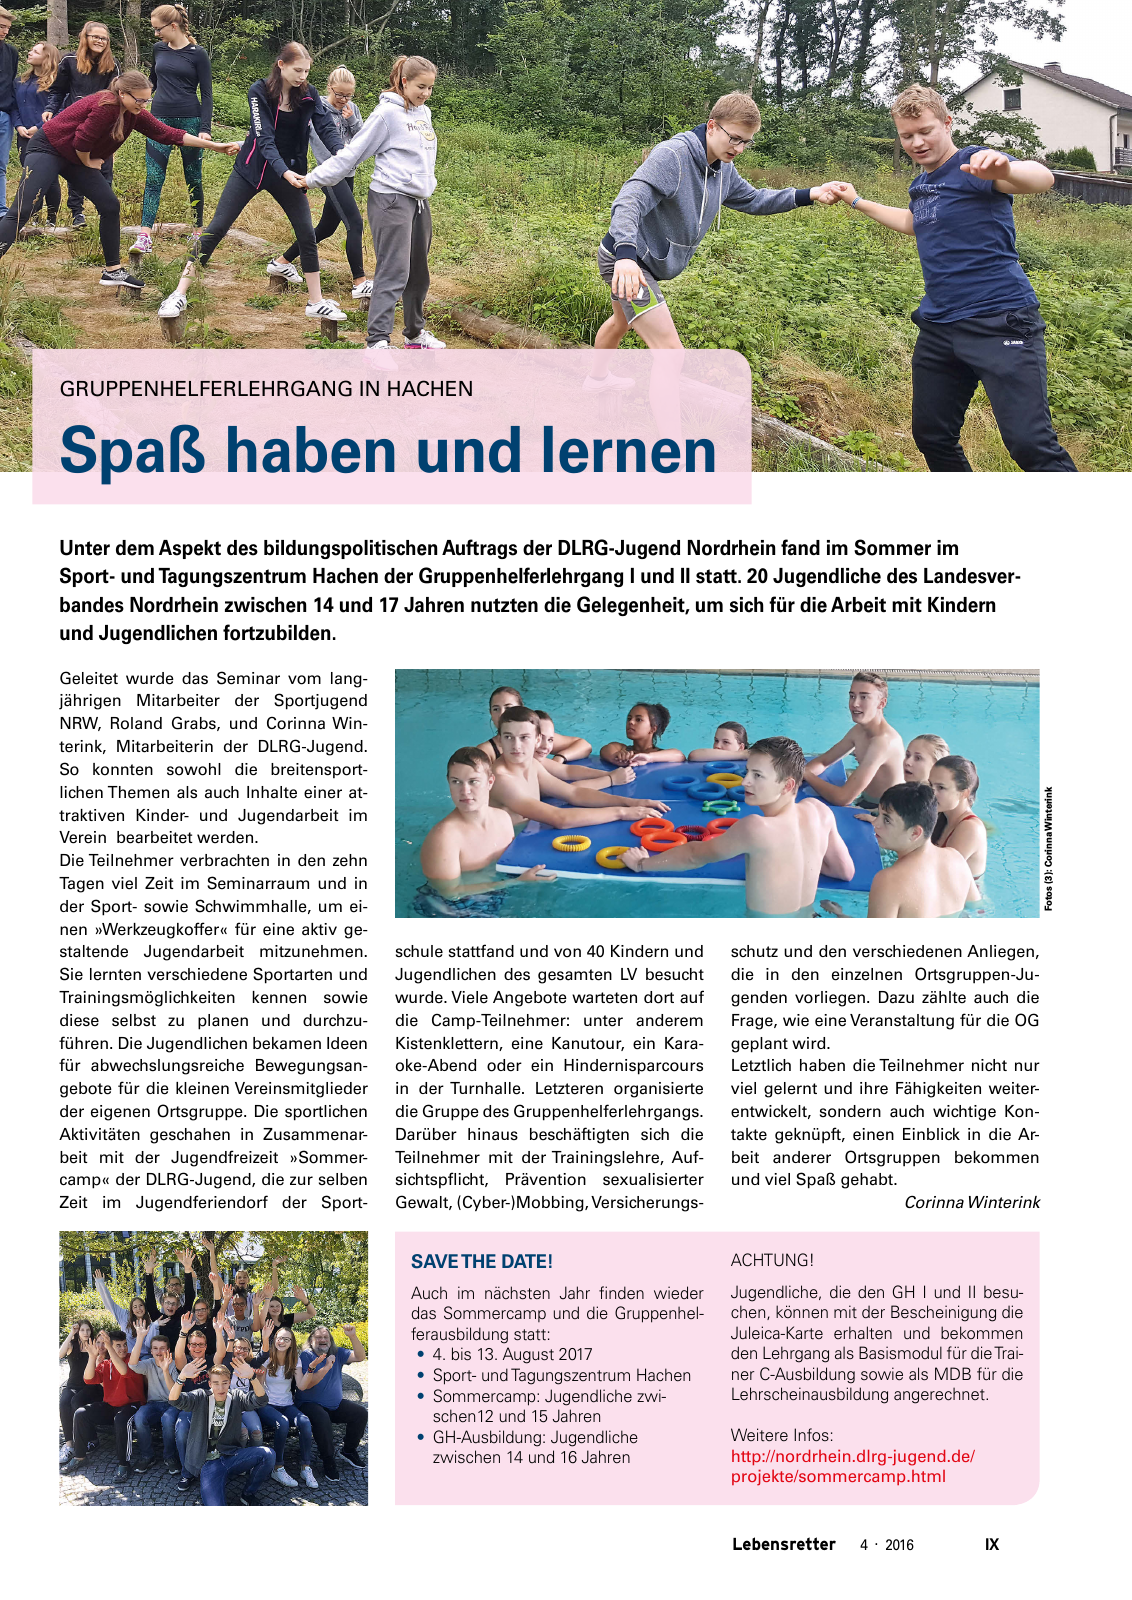 Vorschau Lebensretter 4/2016 - Regionalausgabe Nordrhein Seite 11